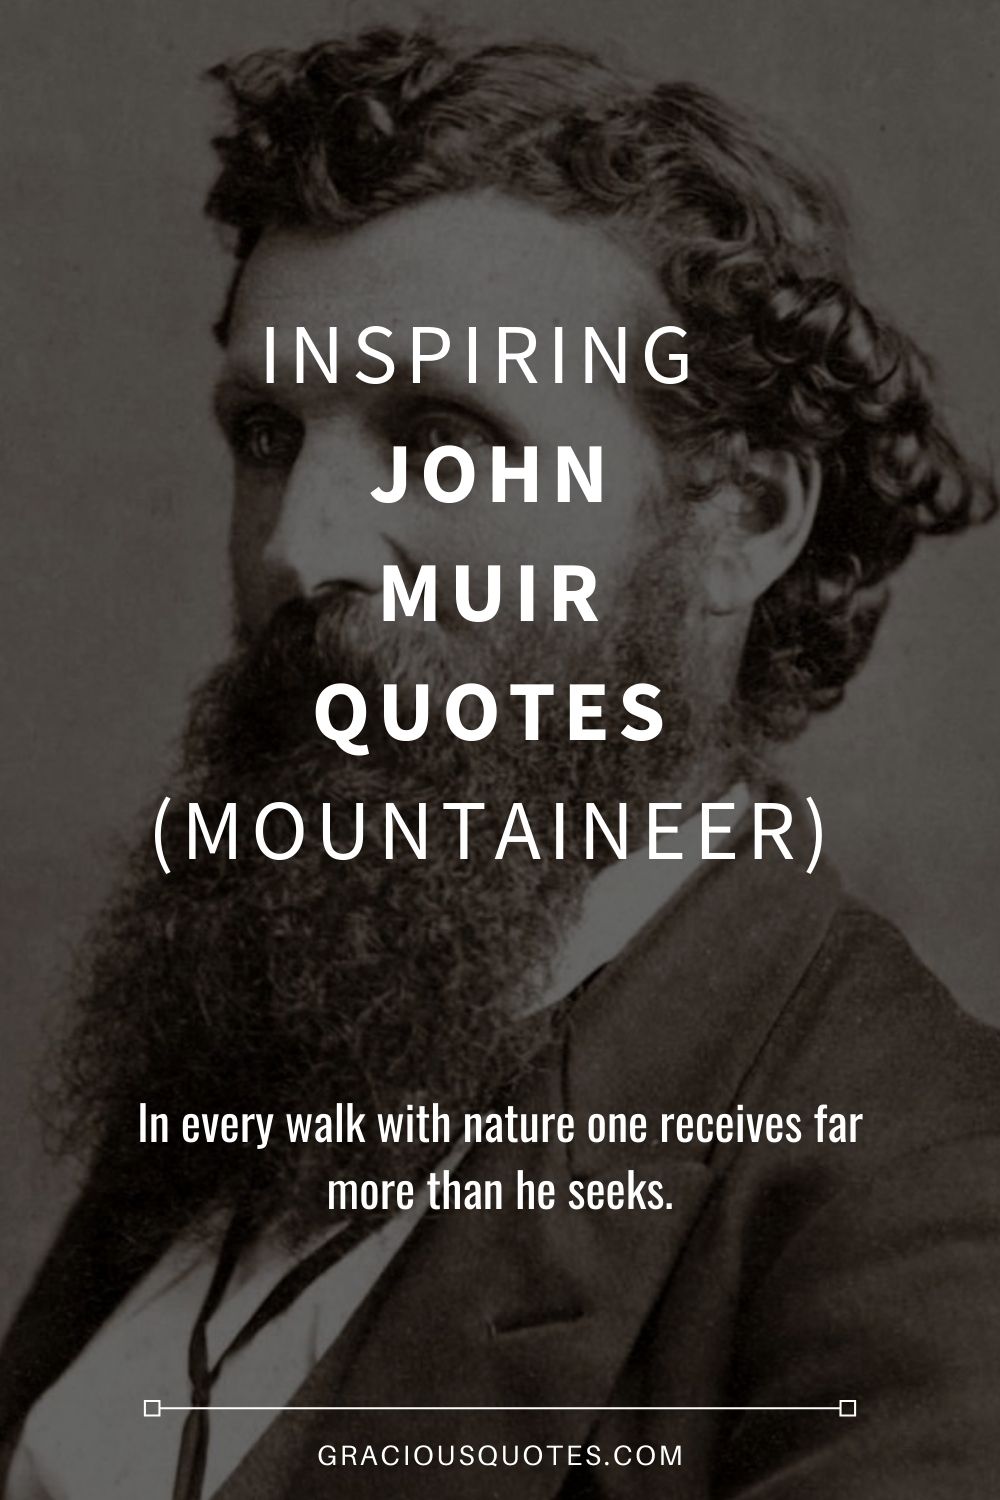 Inspiring John Muir Quotes (MOUNTAINEER) - Gracious Quotes